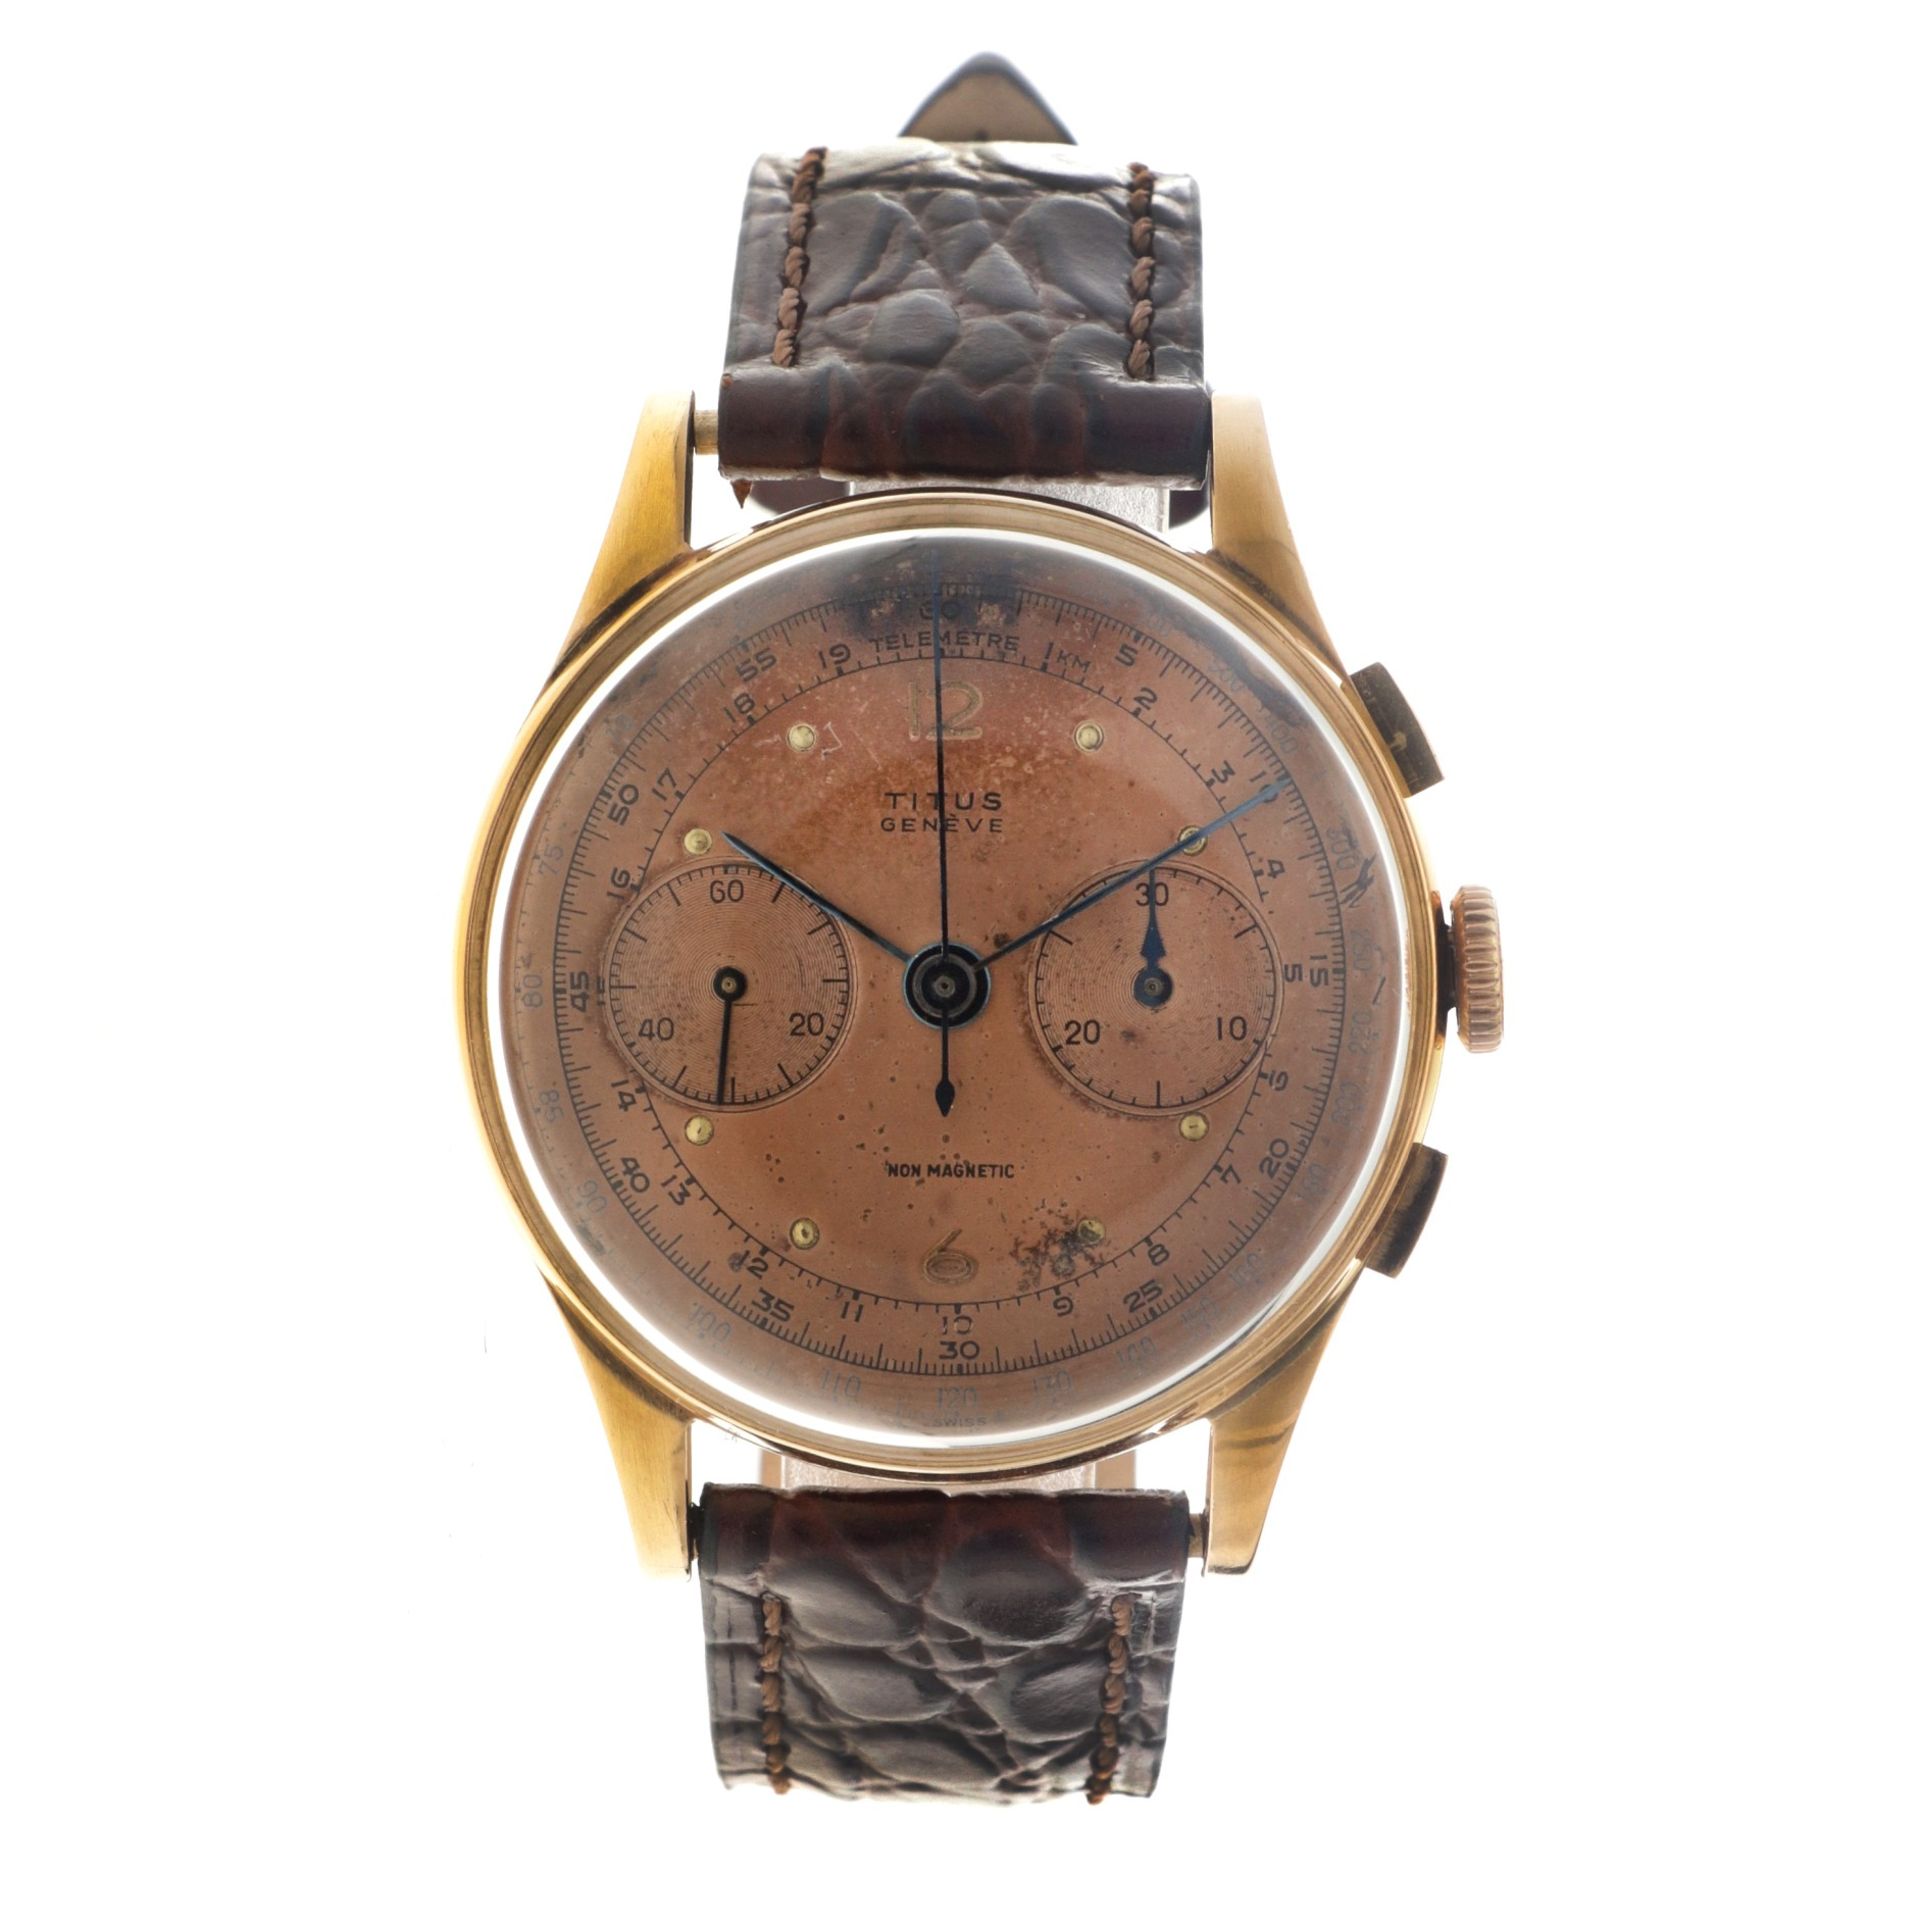 No Reserve - Titus Chronograph Suisse 18K. - Men's watch.